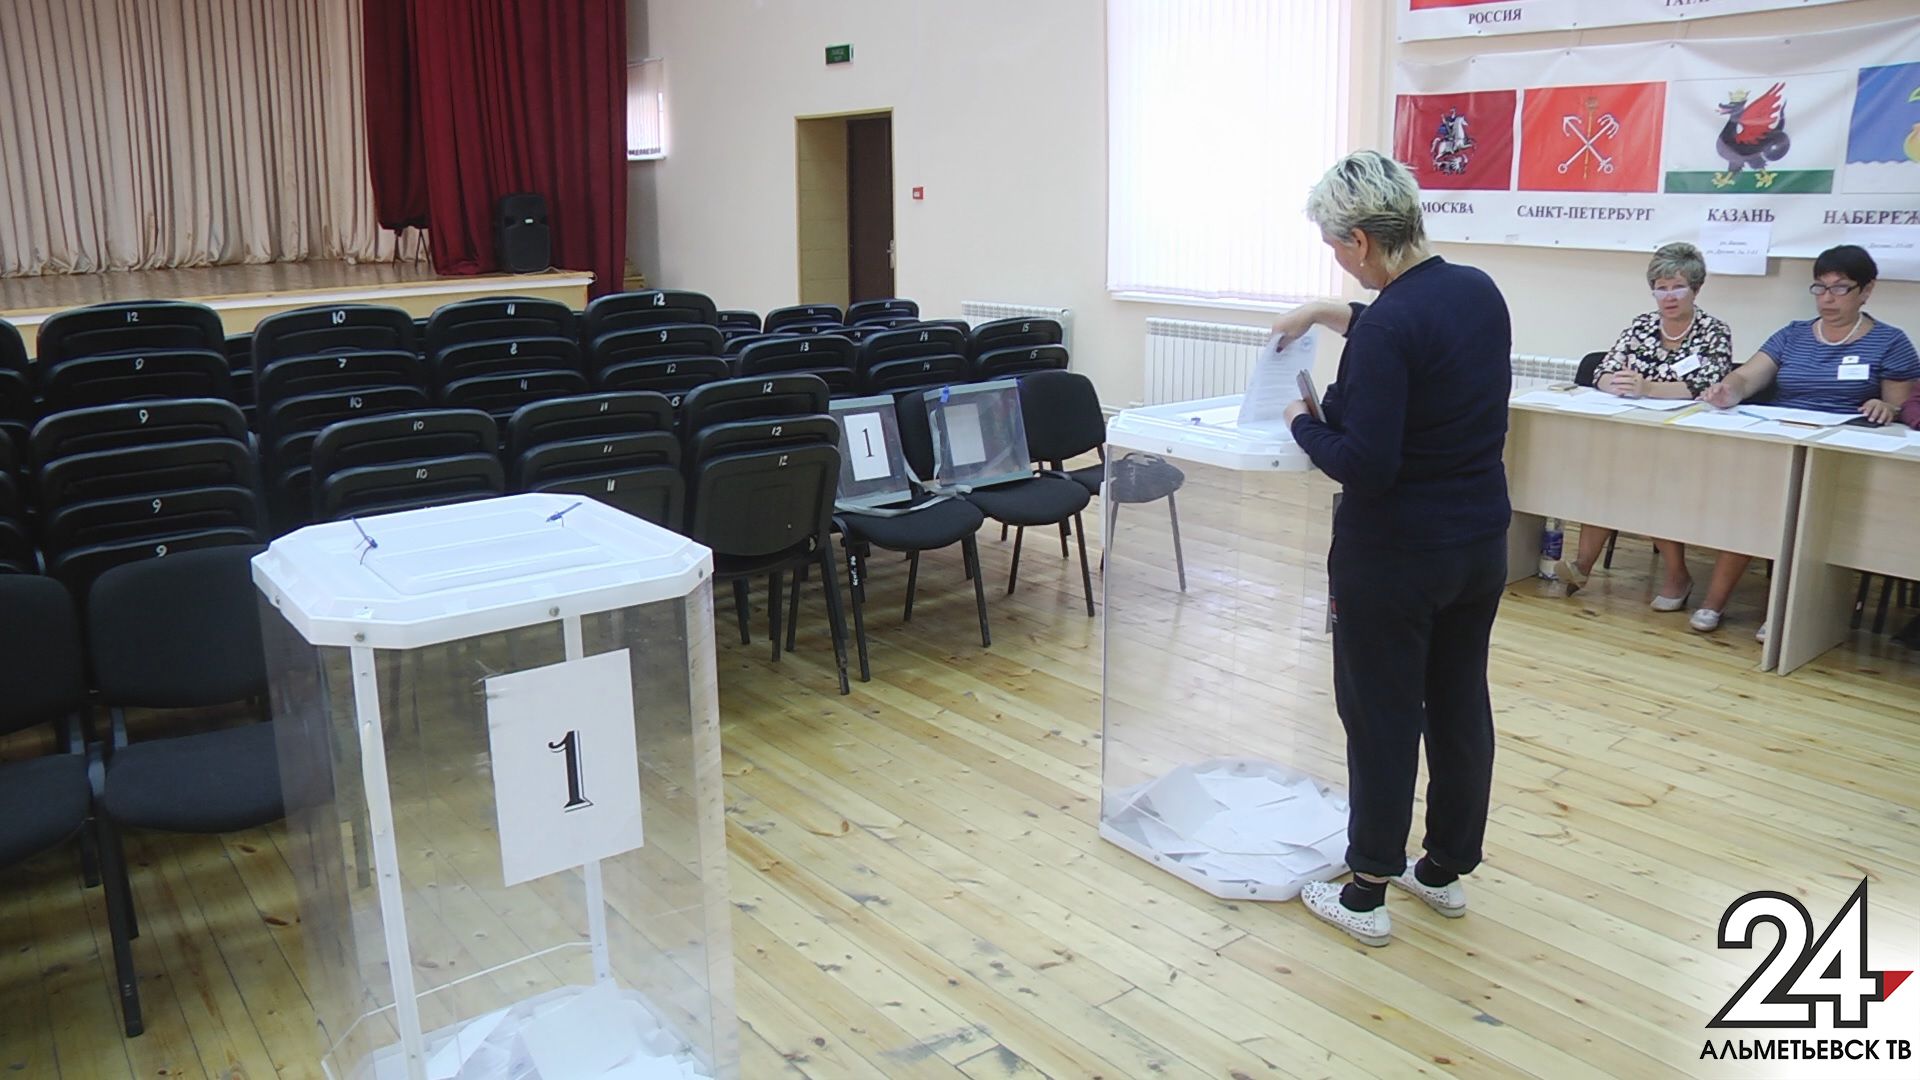 Татарстанцы могут выбрать удобный избирательный участок для голосования на выборах депутатов Госсовета